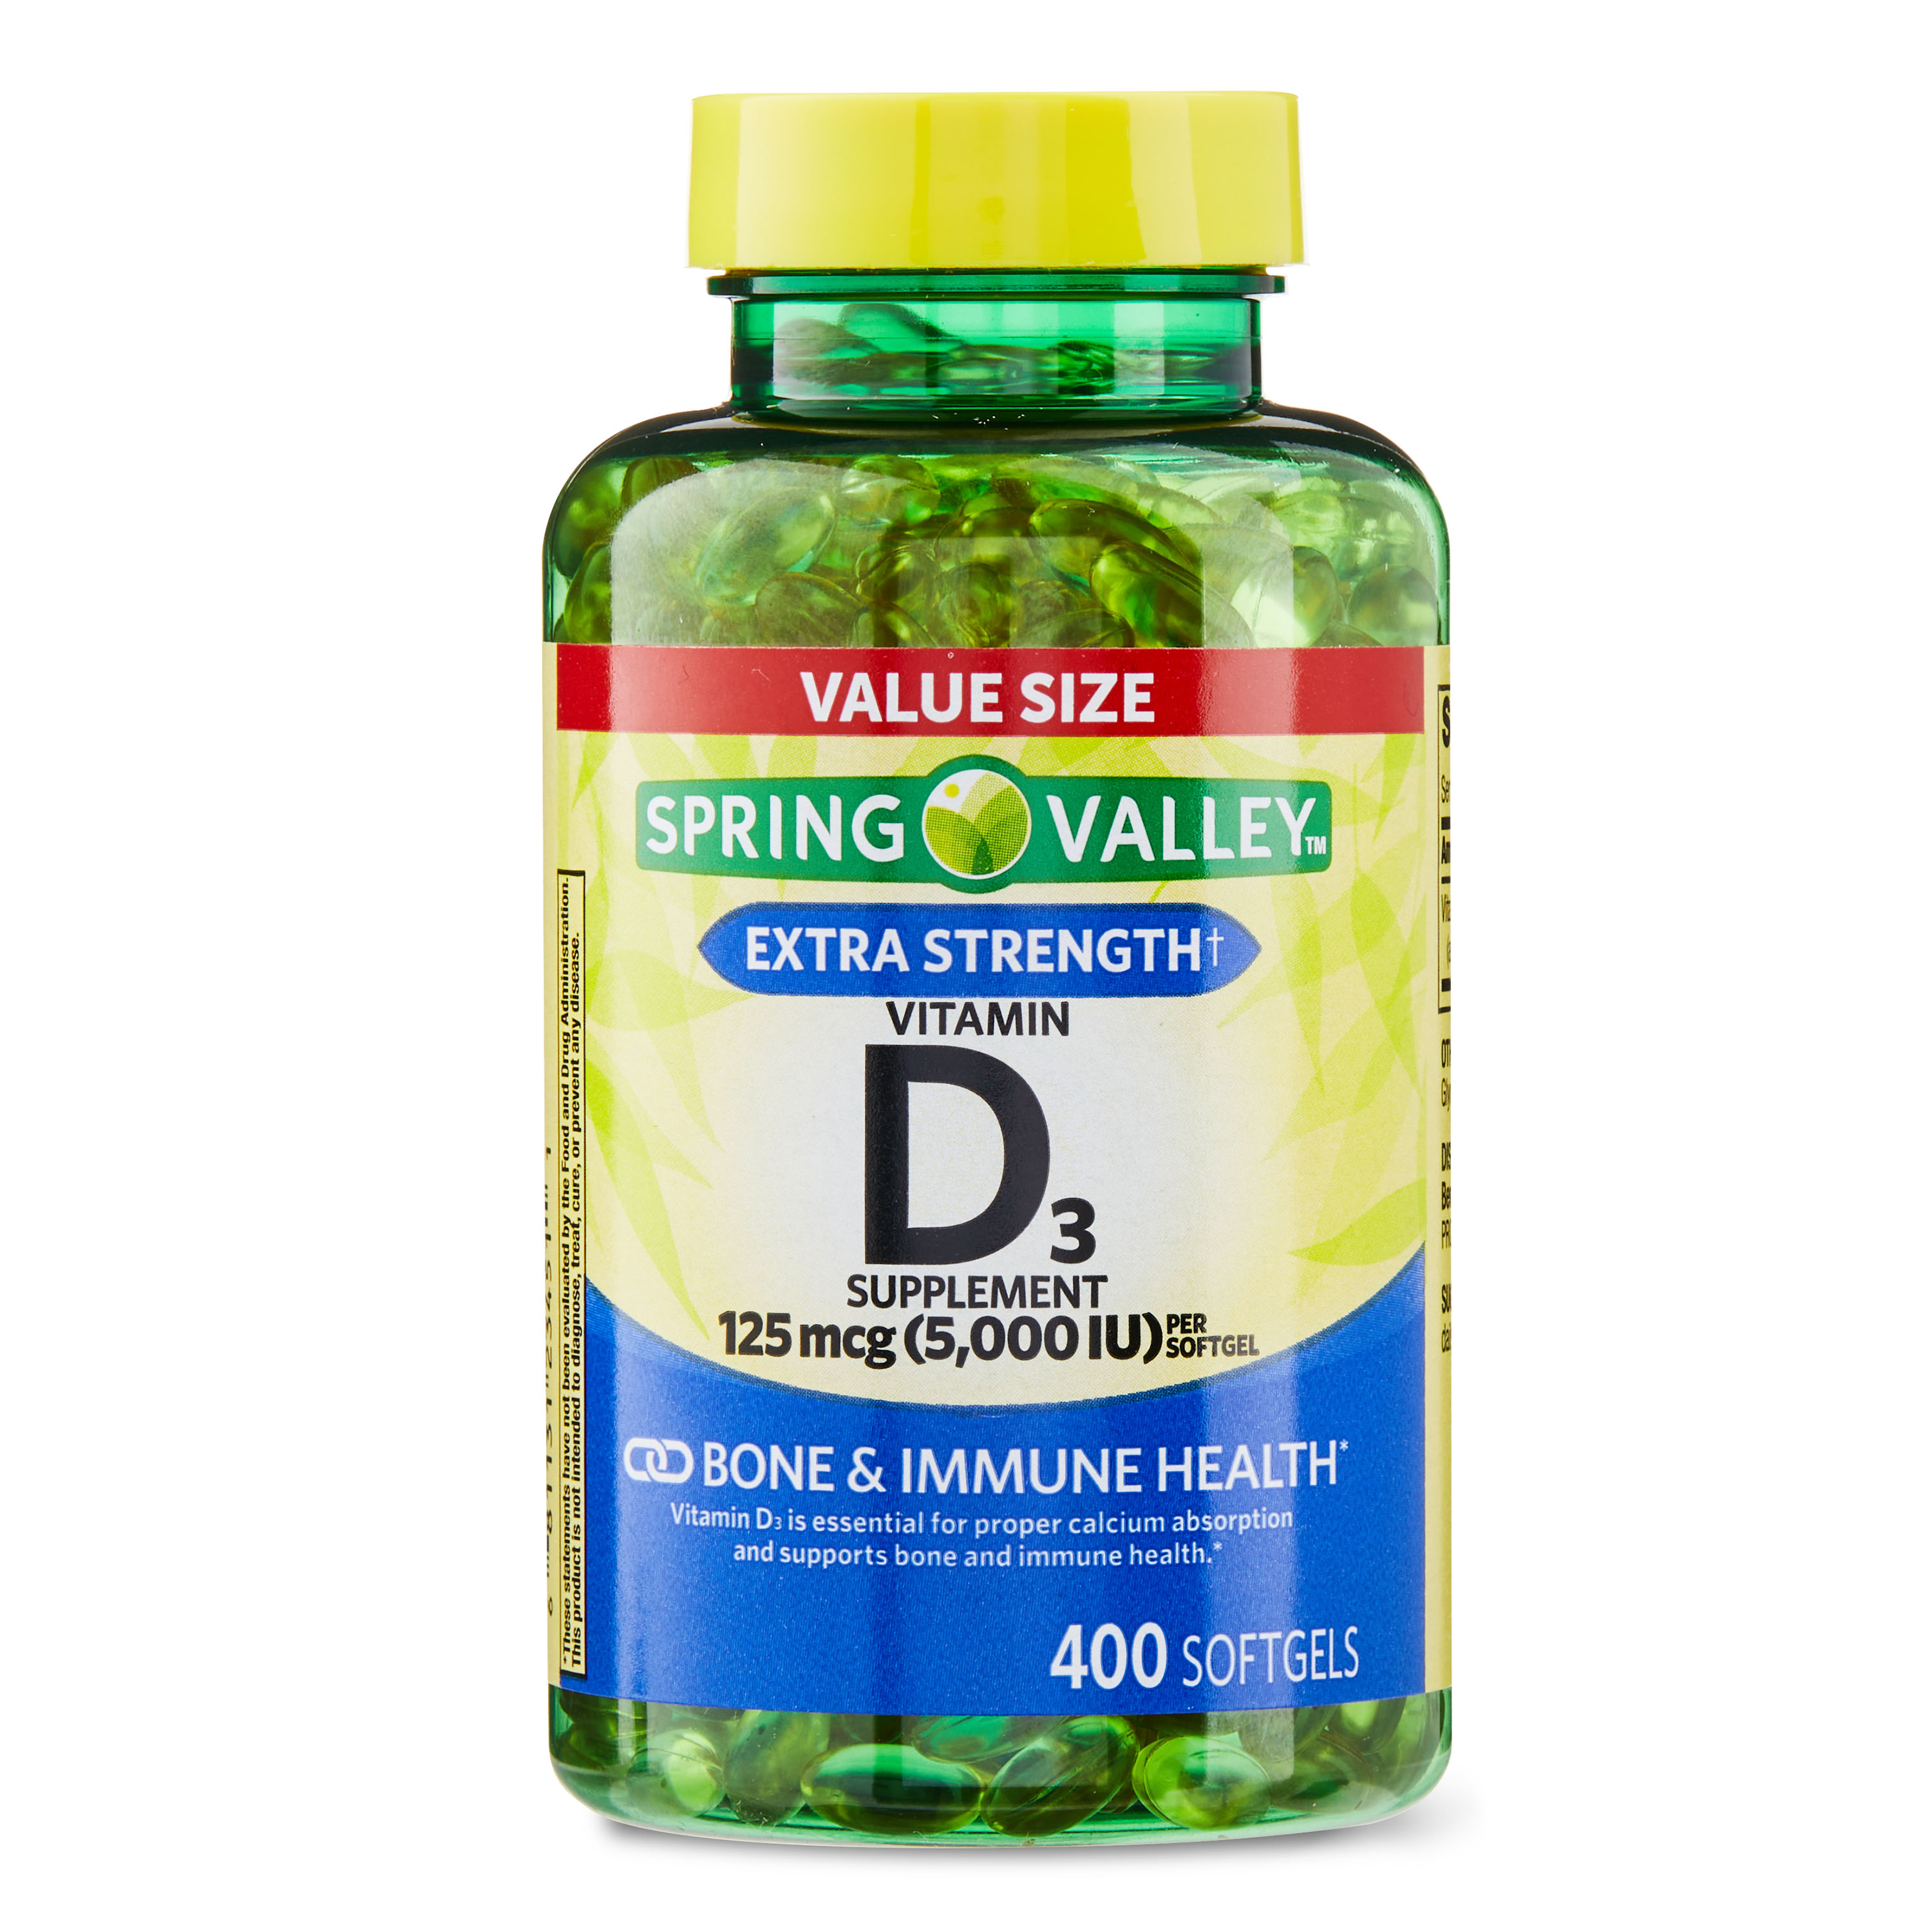 Spring Valley Vitamin D3 Softgels, 125 mcg per Softgel, 5,000 IU, 400 Count - image 1 of 16